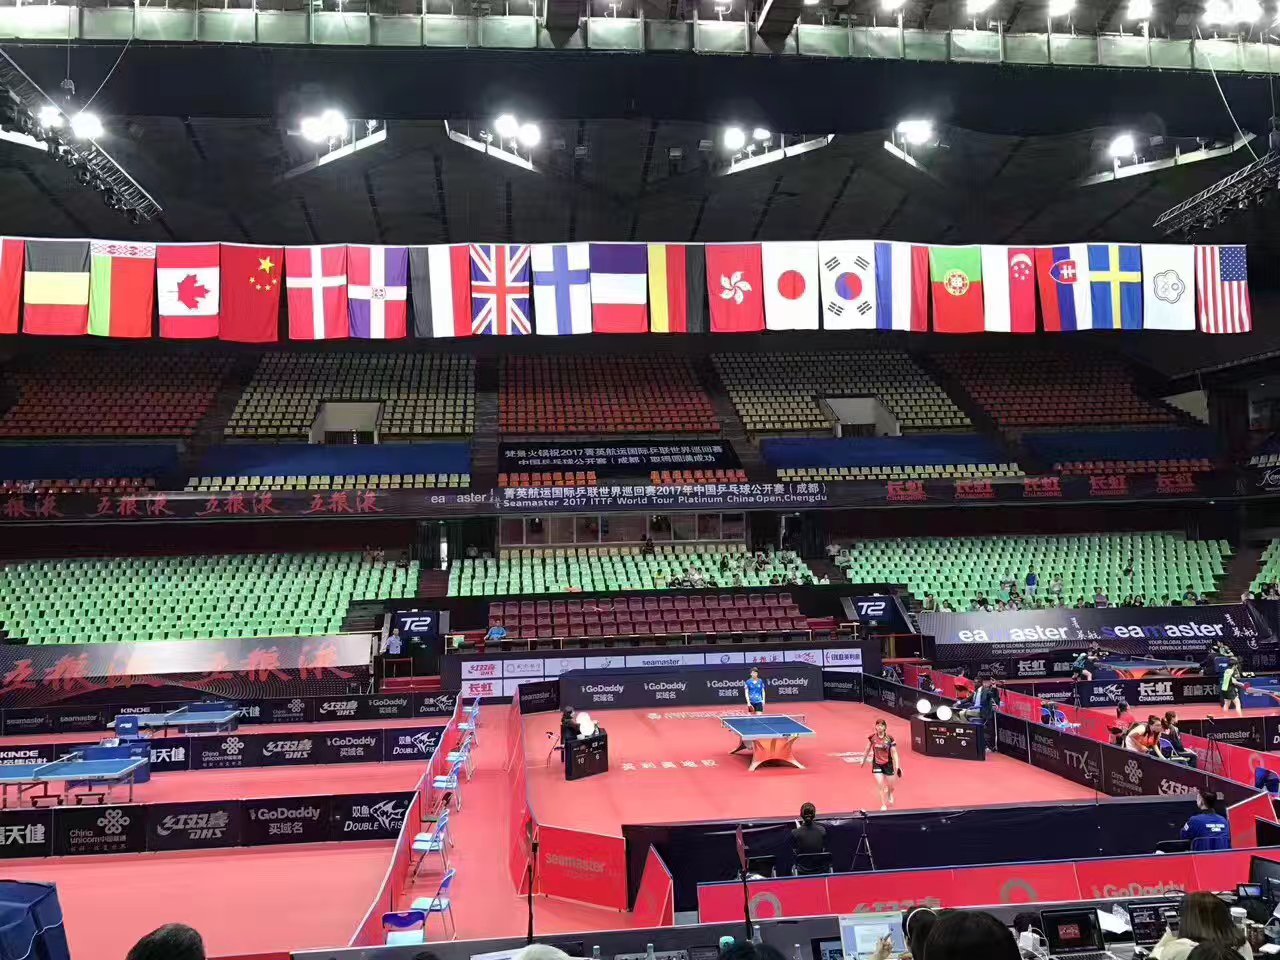 双鱼乒乓球台为2017国际乒联巡回赛中国公开赛指定用台